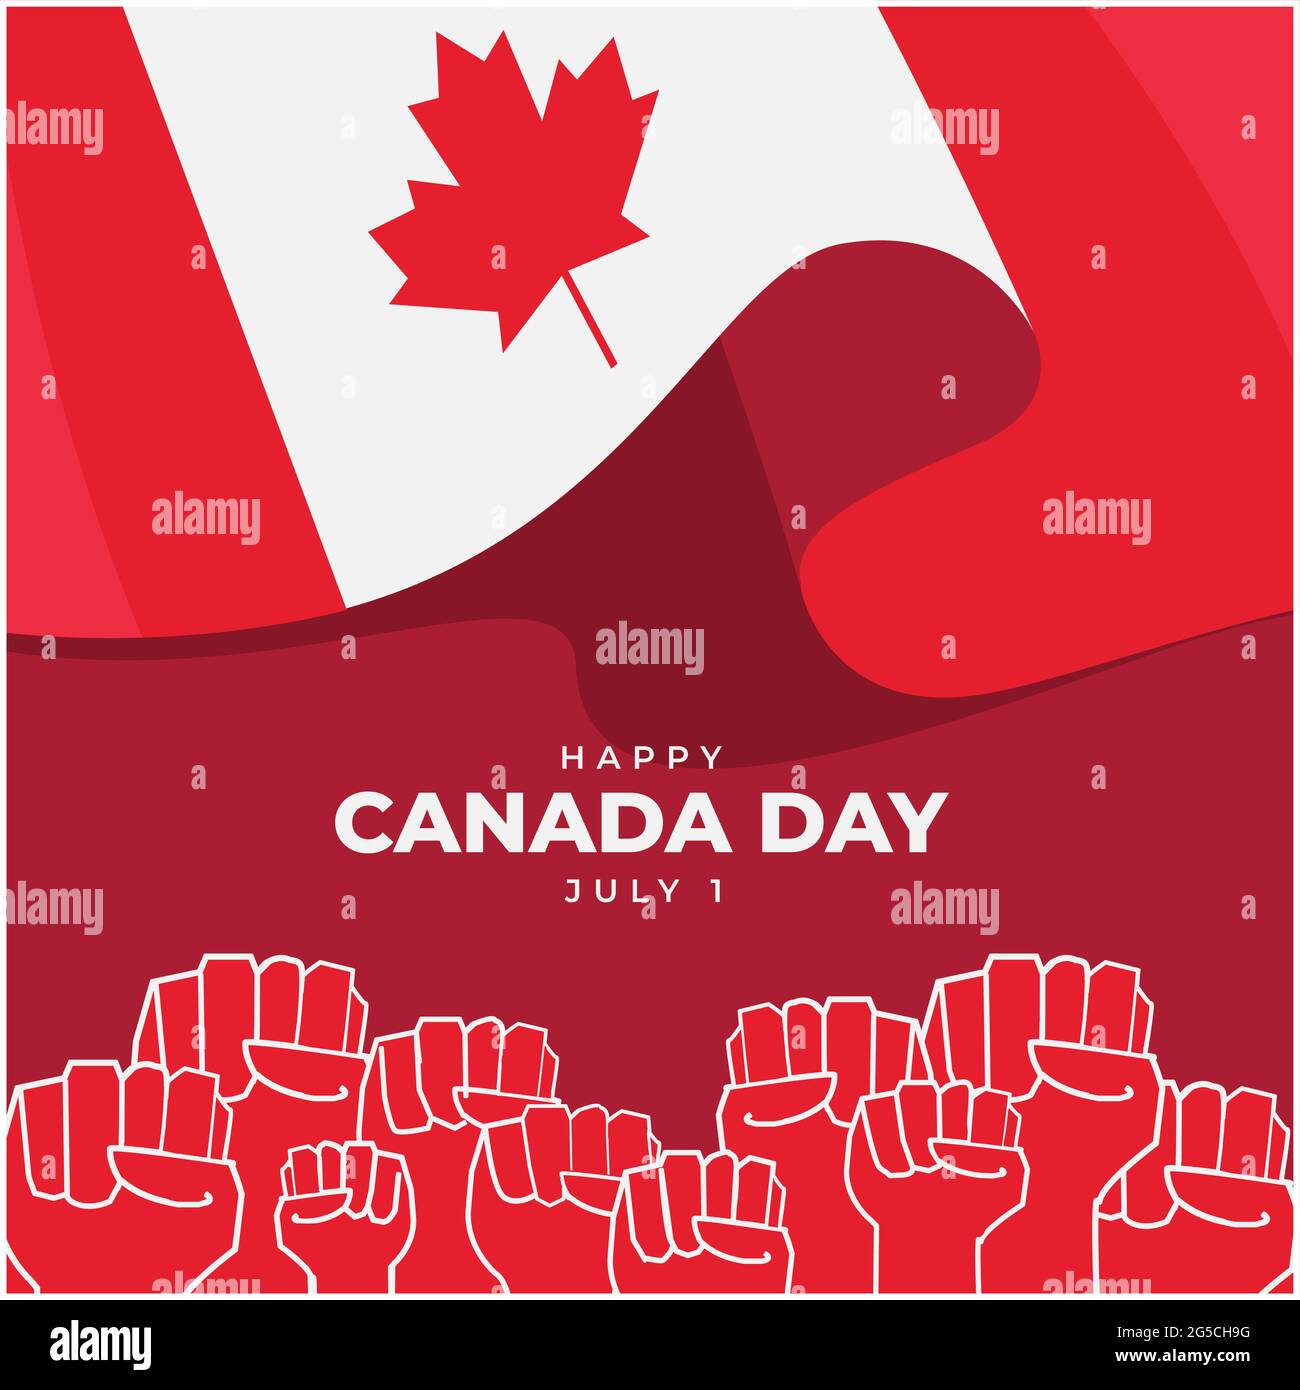 Illustration de la Journée du Canada heureux sur fond rouge. Ils sont le drapeau du Canada, la feuille d'érable et les mains des jeunes dans l'affiche Illustration de Vecteur